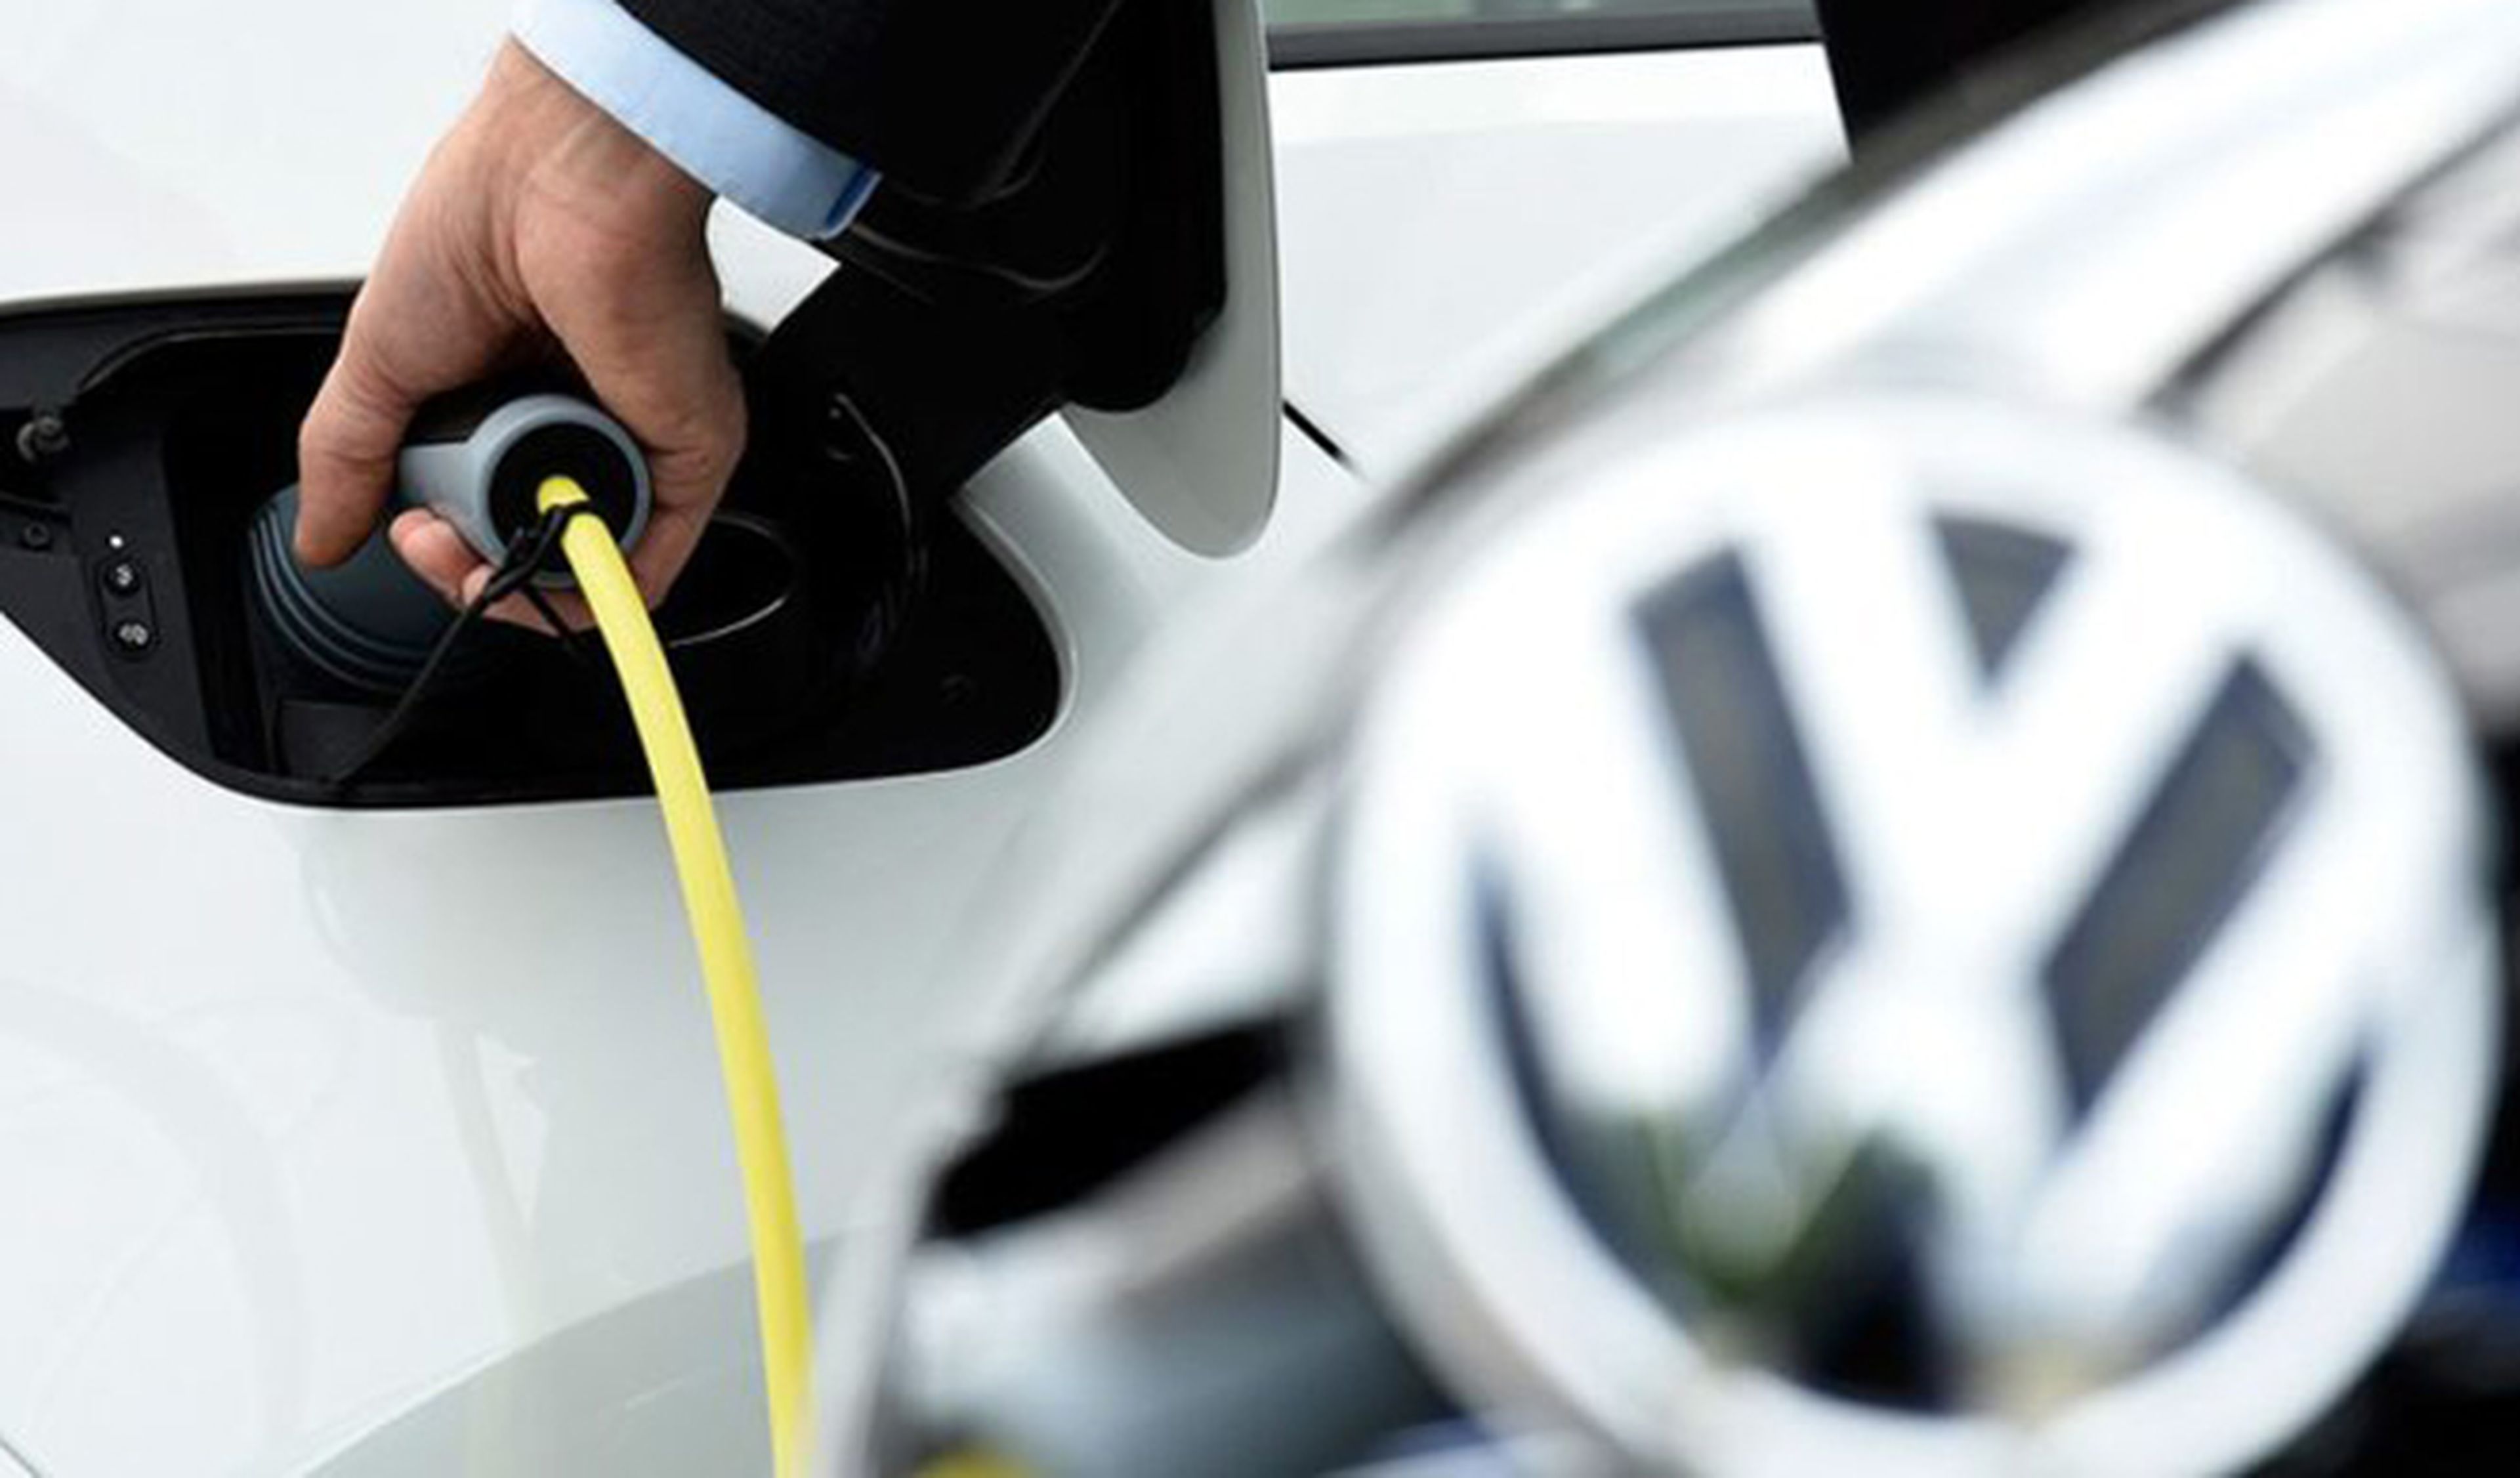 Lo nuevo de VW: 500 kms de autonomía y carga en 15 minutos